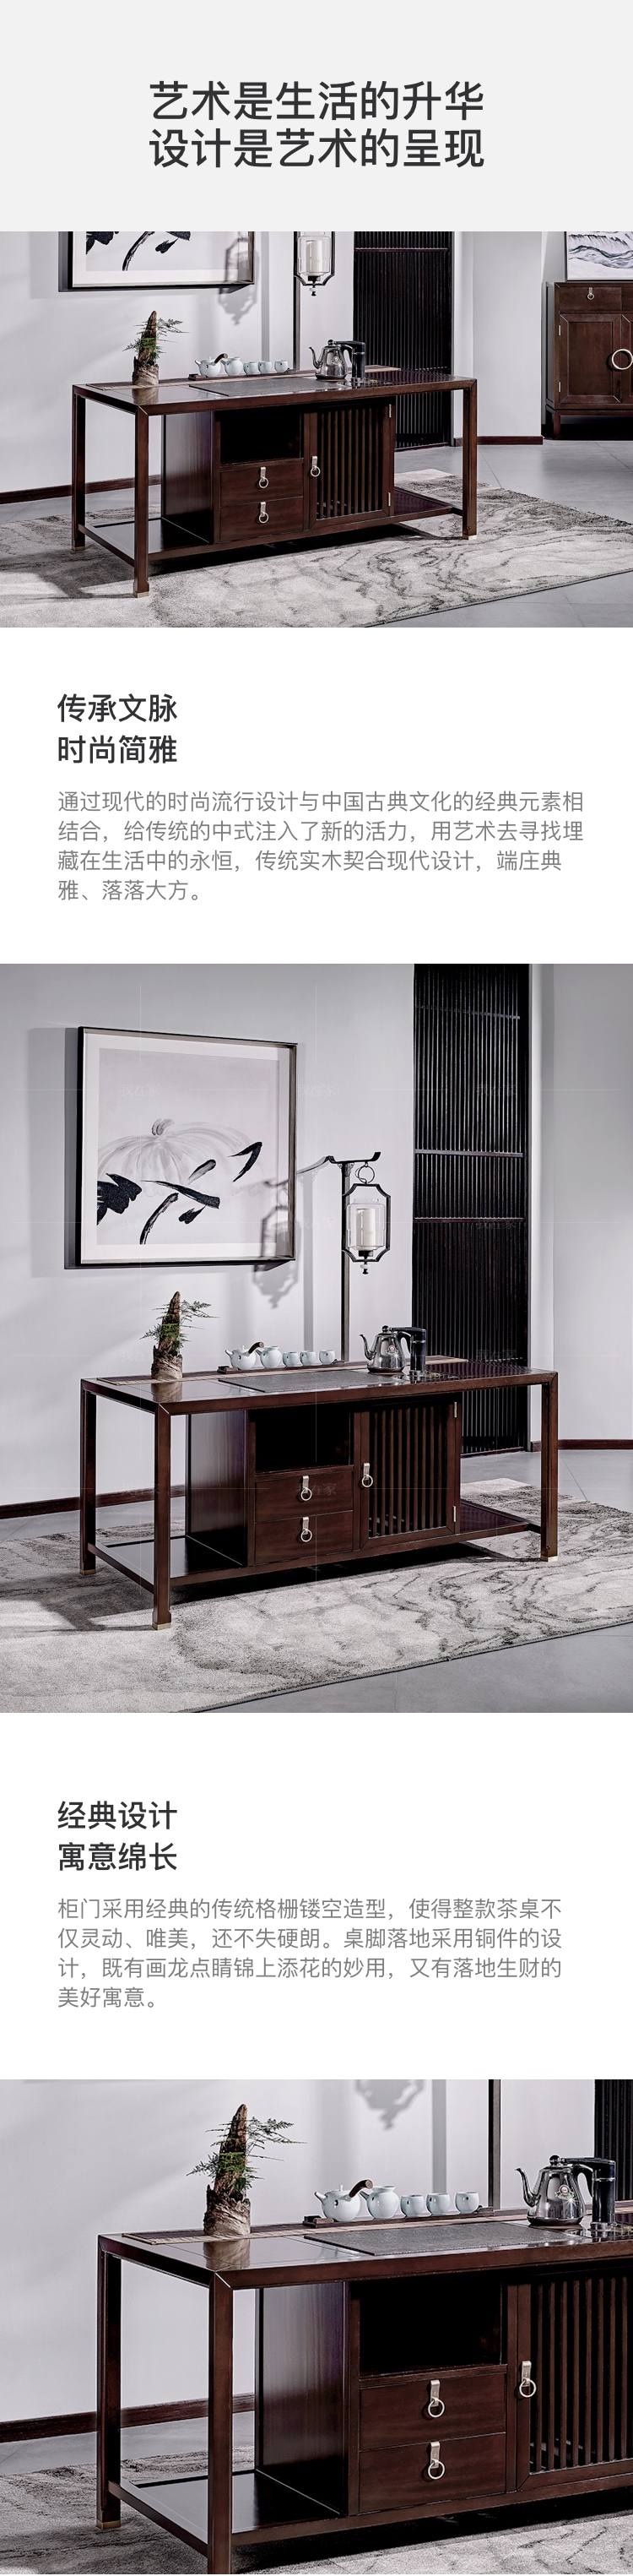 新中式风格疏影茶桌的家具详细介绍